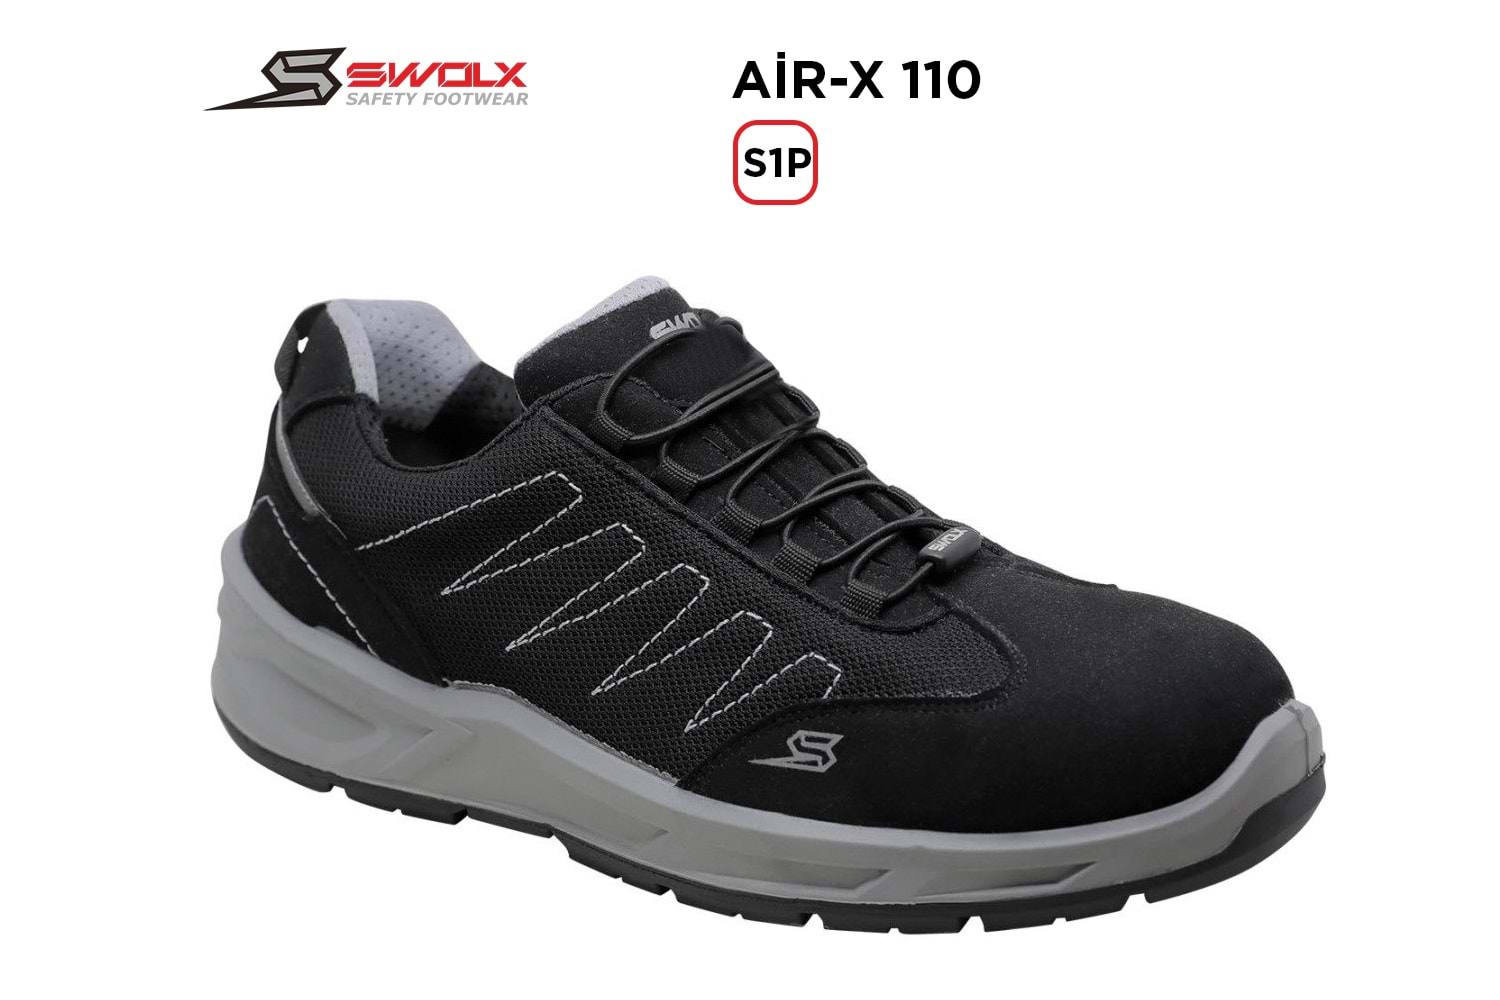 Swolx İş Ayakkabısı - Air-X Standart Bağcık 110 S1P - 47